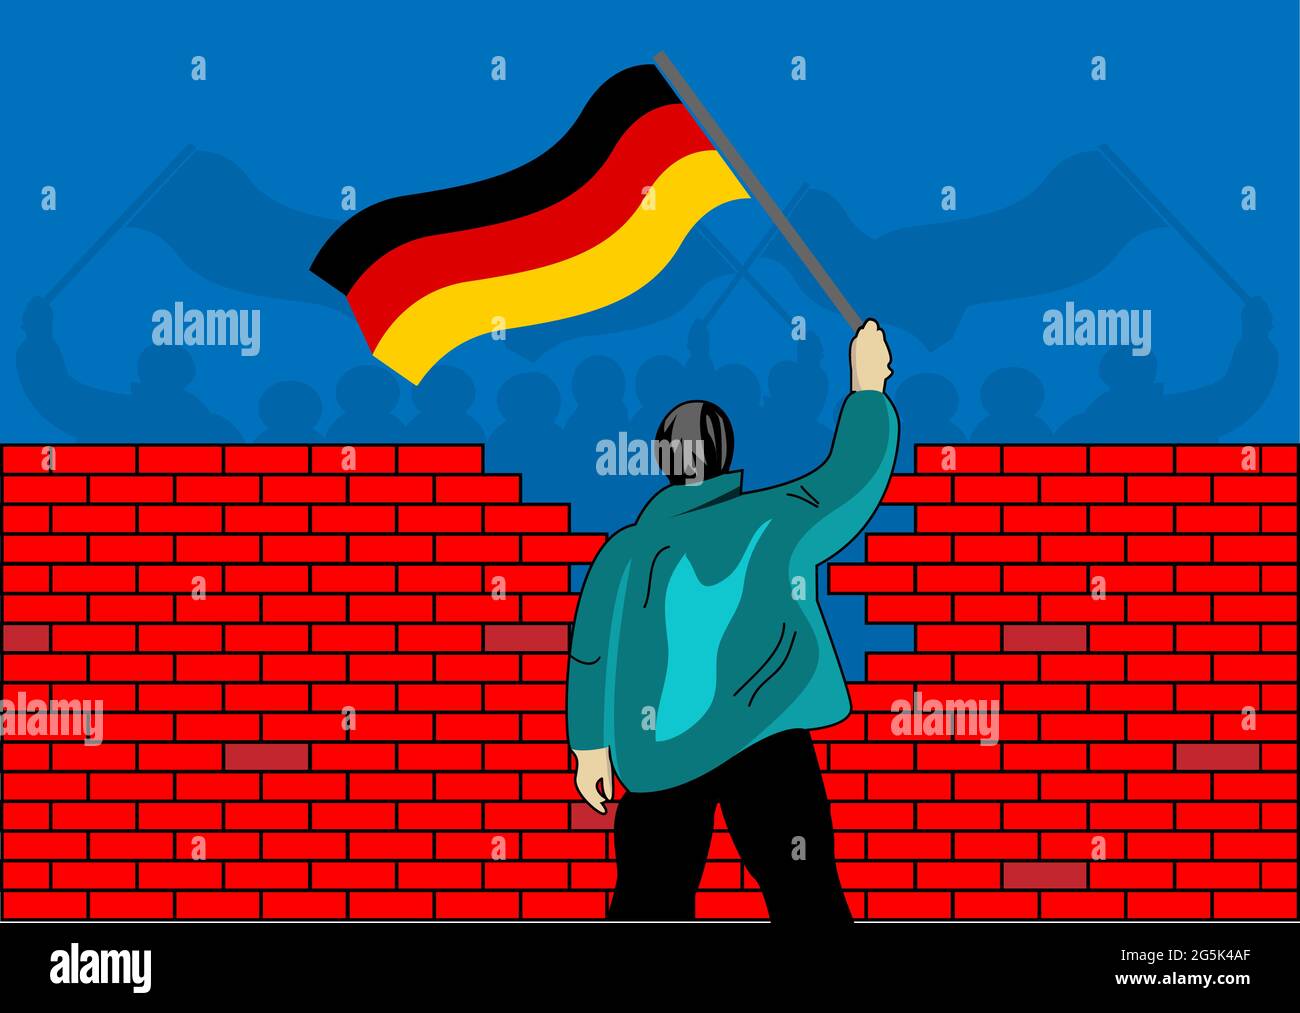 Menschen mit deutschen Fahnen, die durch eine Mauer getrennt sind. Konzept für die Vereinigung von West- und Ostdeutschland. Fall der berliner Mauer Stock Vektor